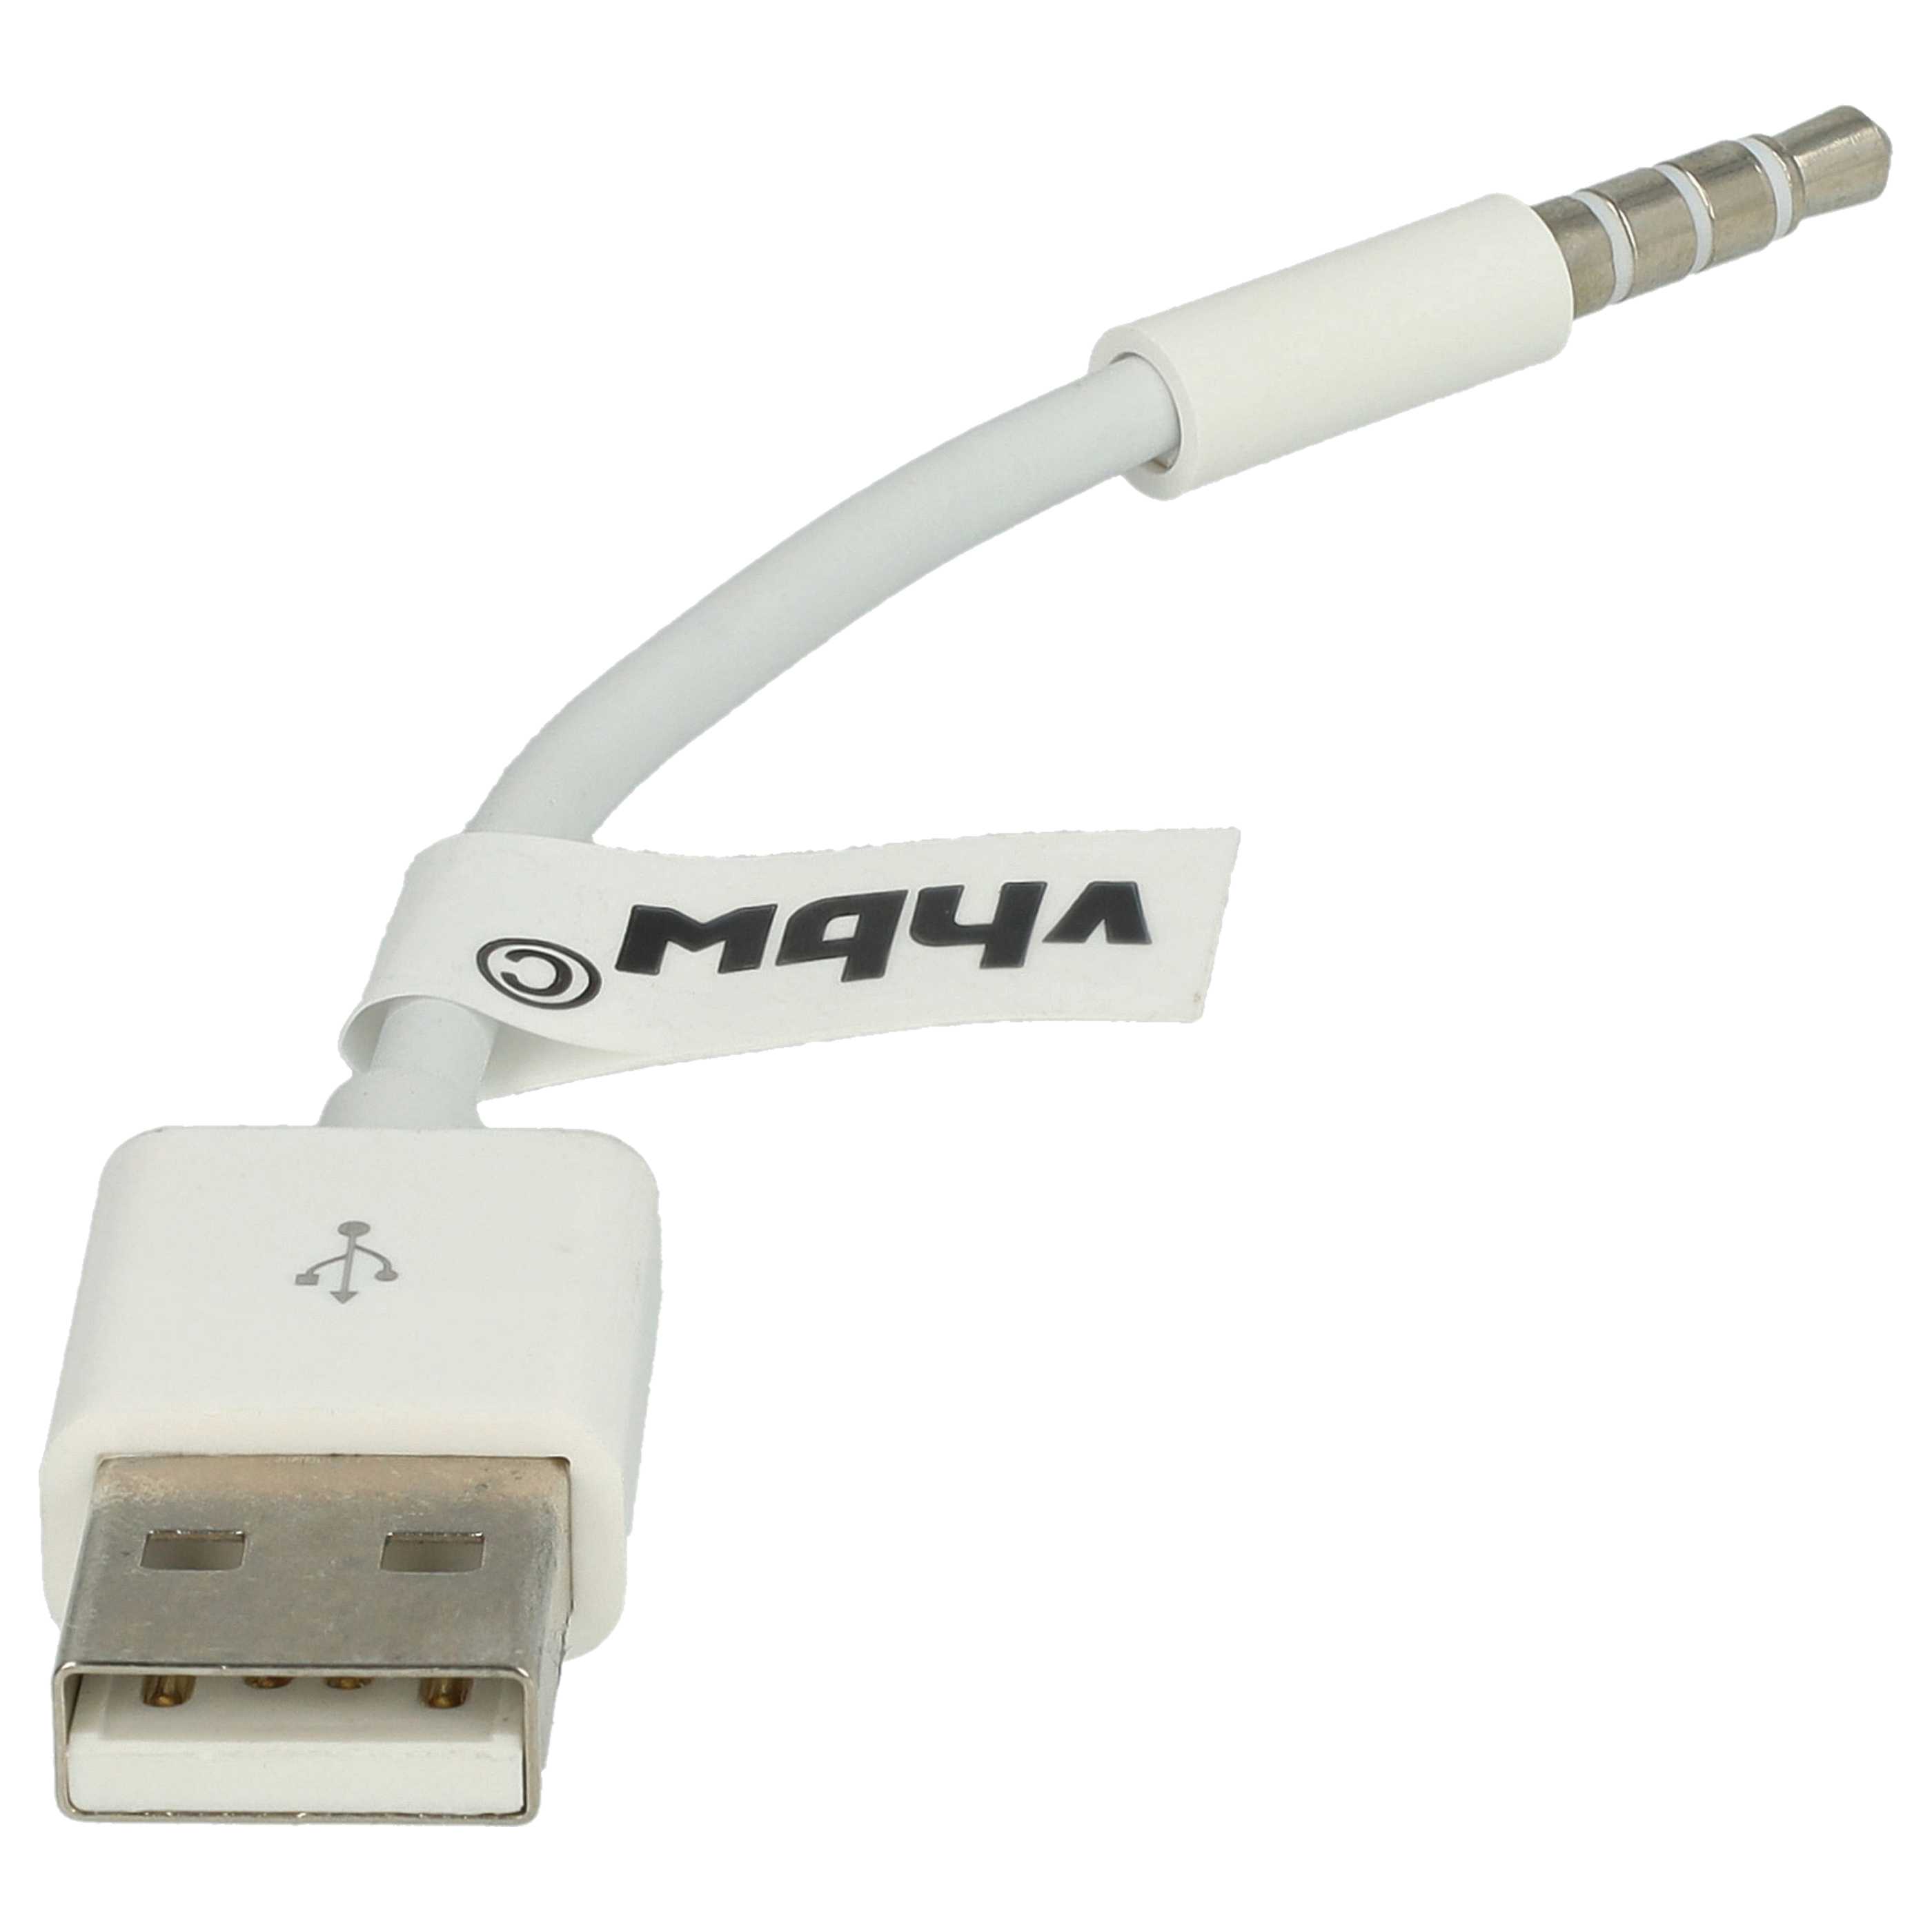 Cable de datos USB Cable de carga compatible con Dr. Dre / Apple Beats, etc.